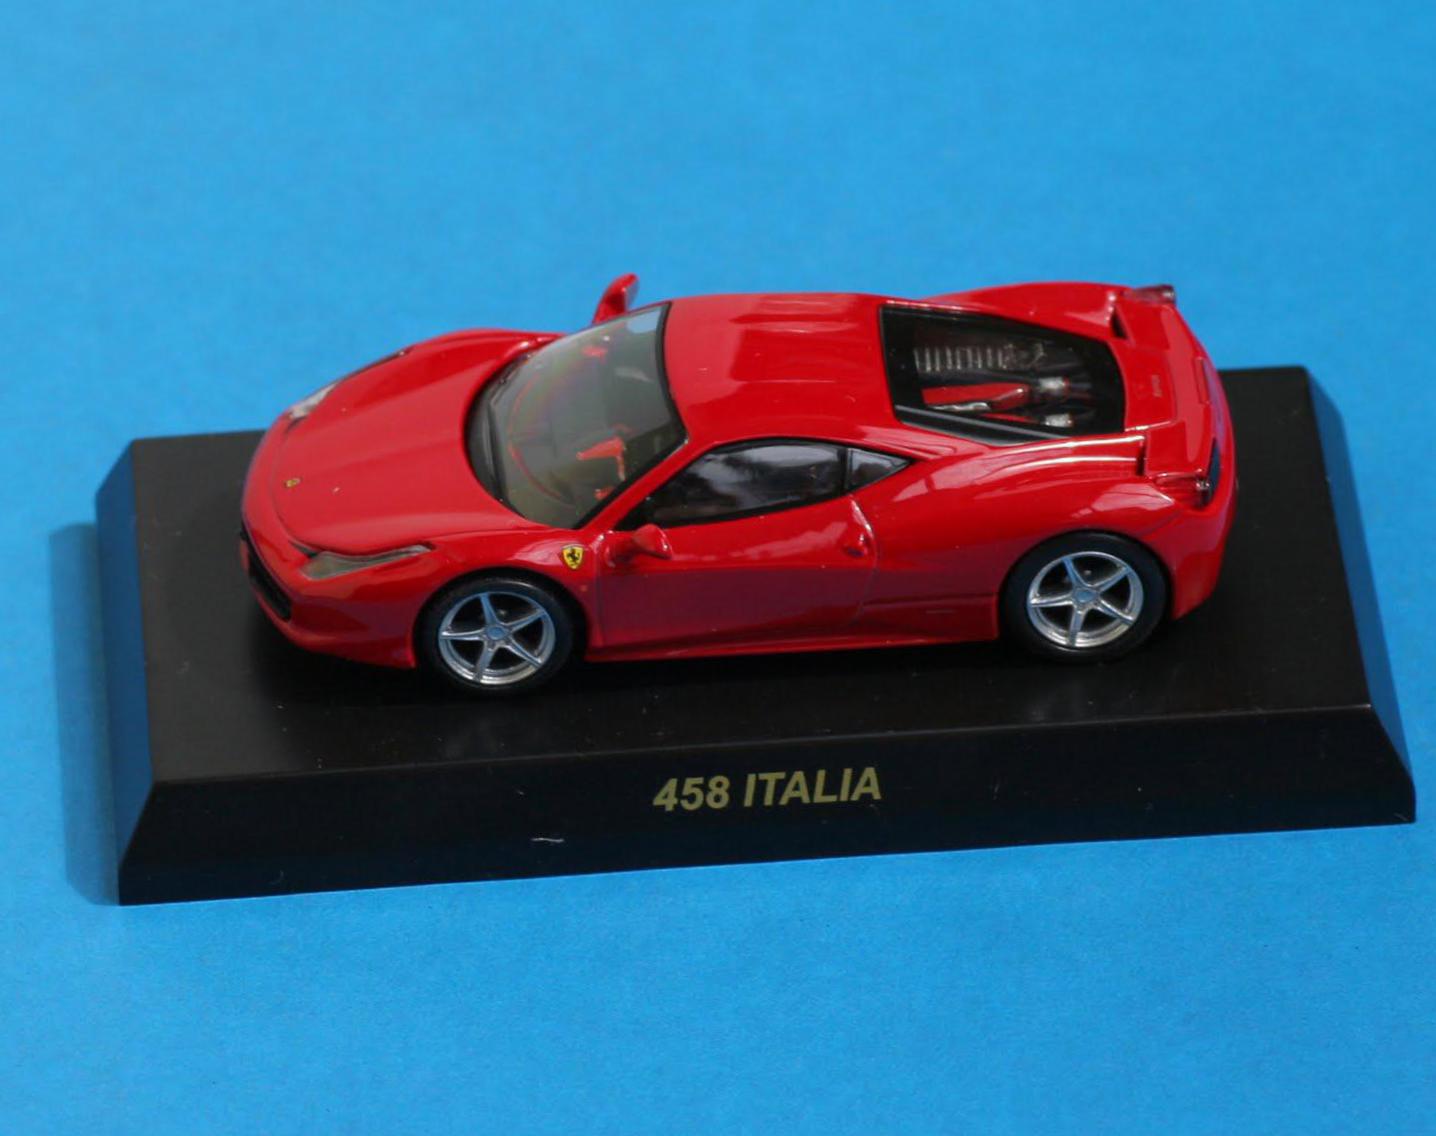 458 Italia Ferrari tuning 2009